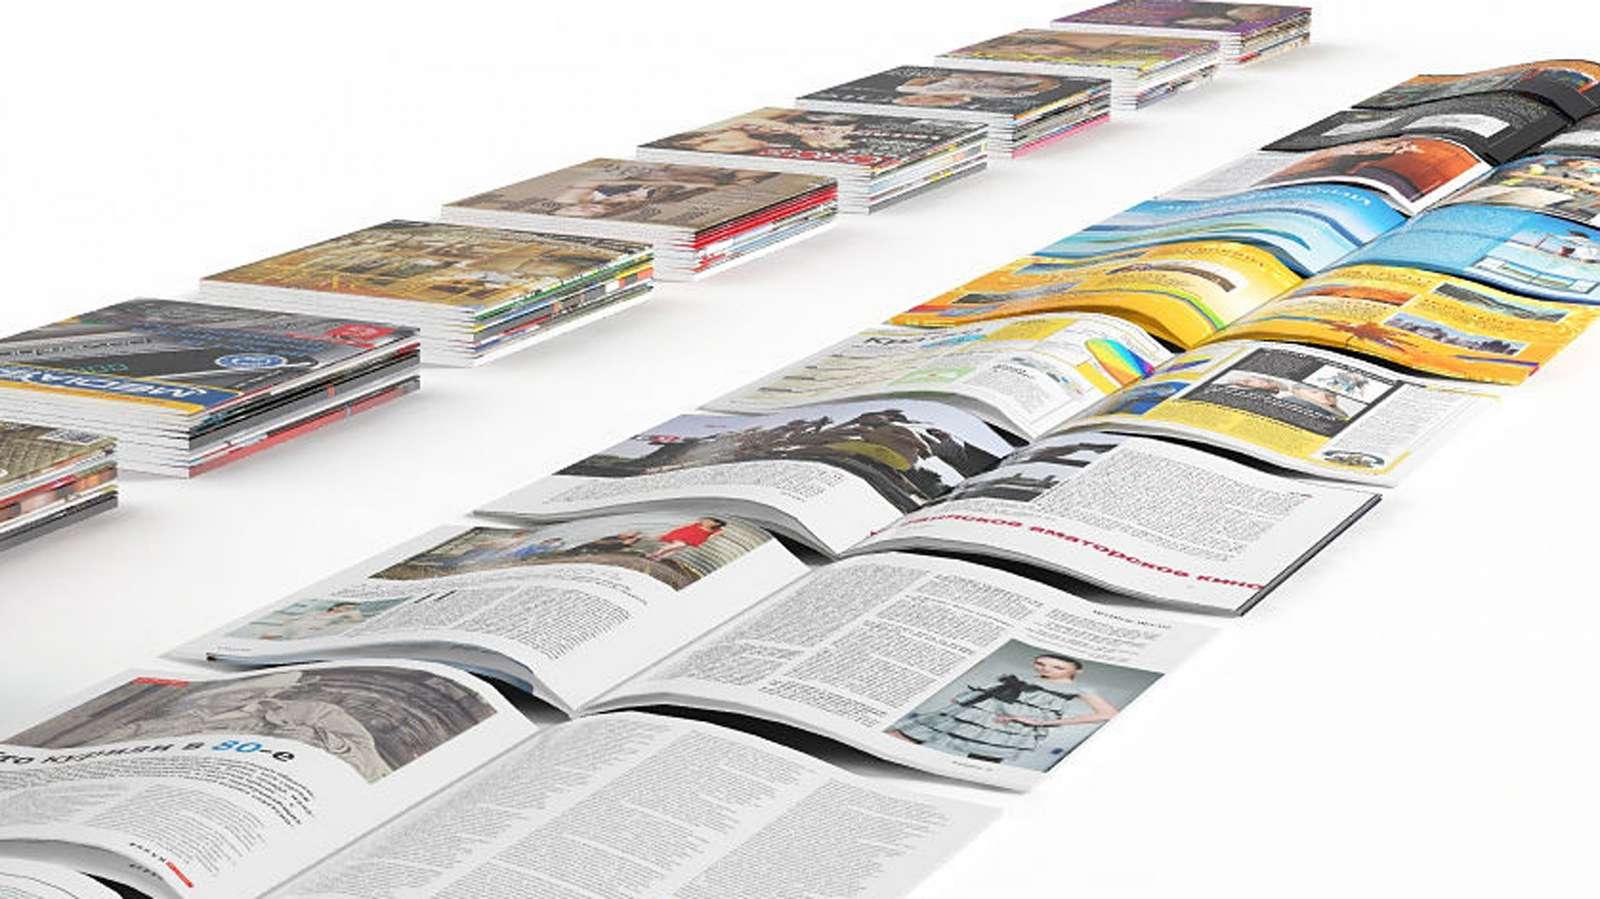  Koje novine i časopise najviše čitaju Kazahstanci 